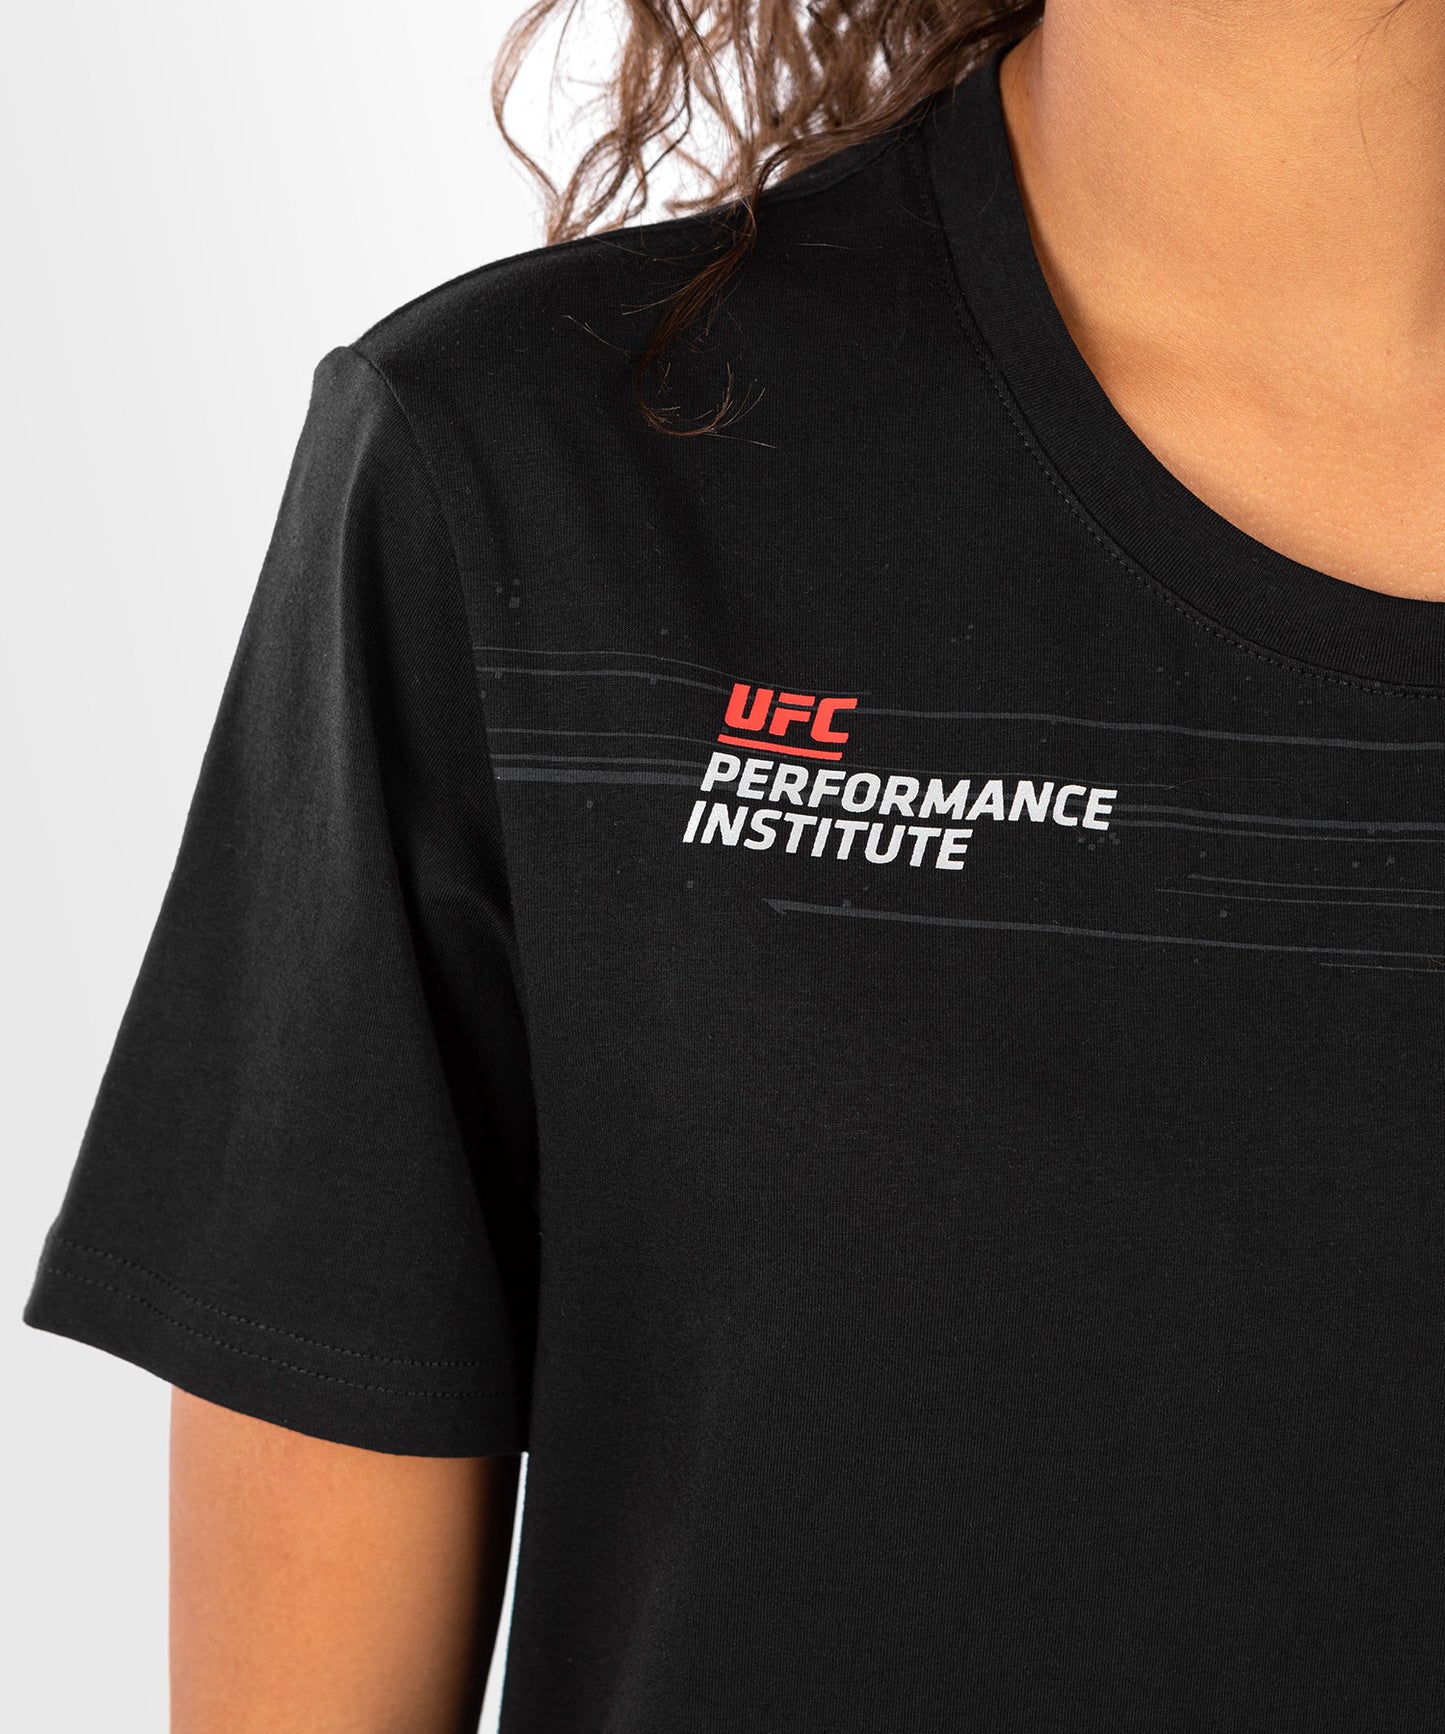 T-Shirt Femme UFC Venum Performance Institute 2.0 - Noir/Rouge